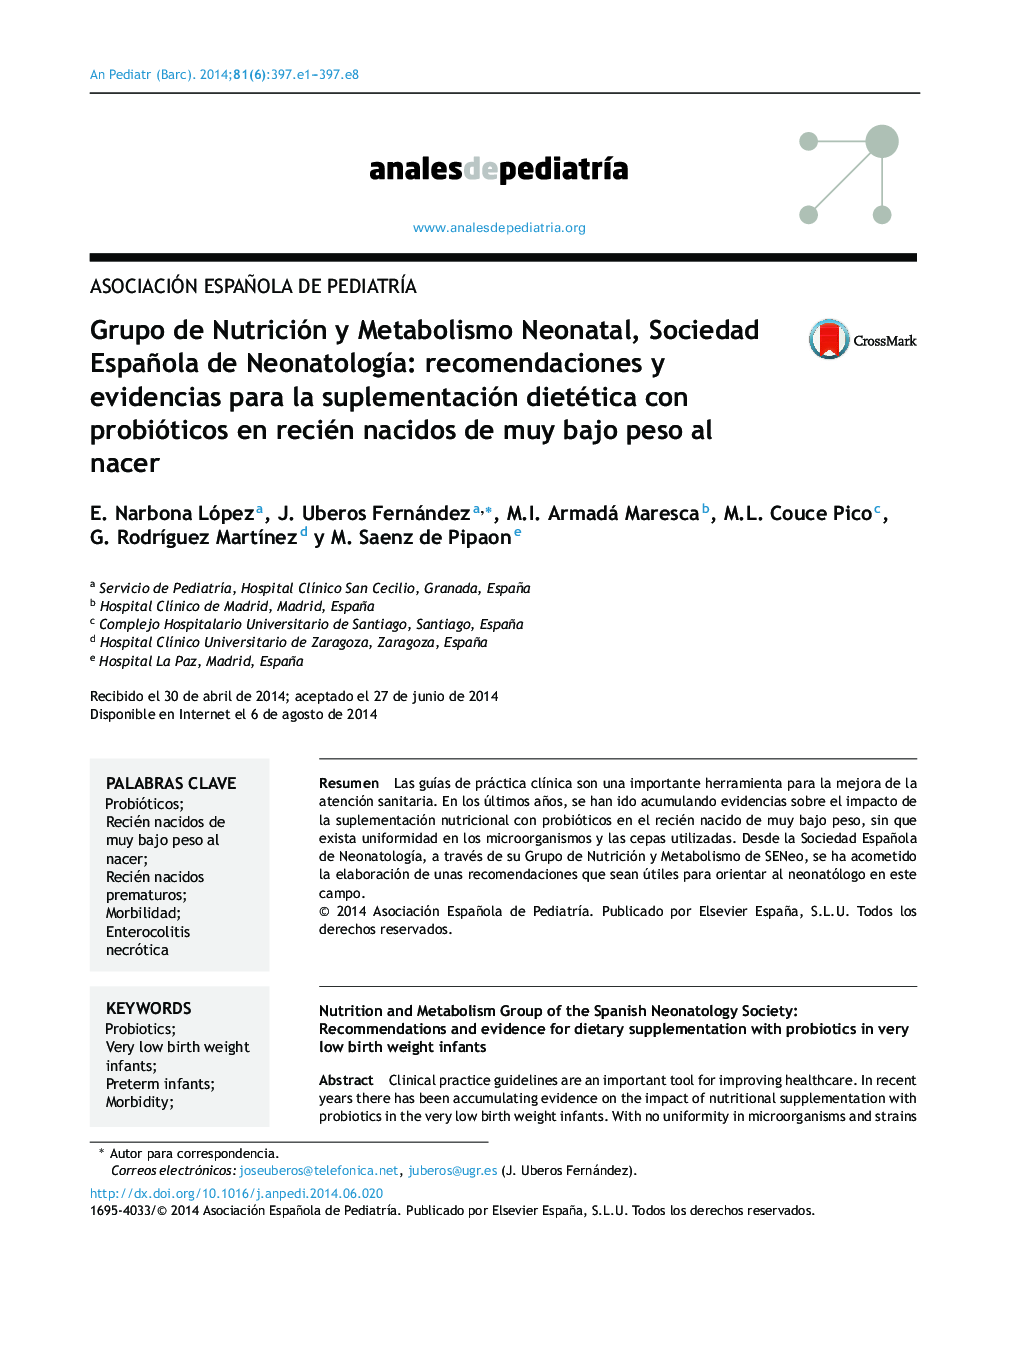 Grupo de Nutrición y Metabolismo Neonatal, Sociedad Española de NeonatologÃ­a: recomendaciones y evidencias para la suplementación dietética con probióticos en recién nacidos de muy bajo peso al nacer